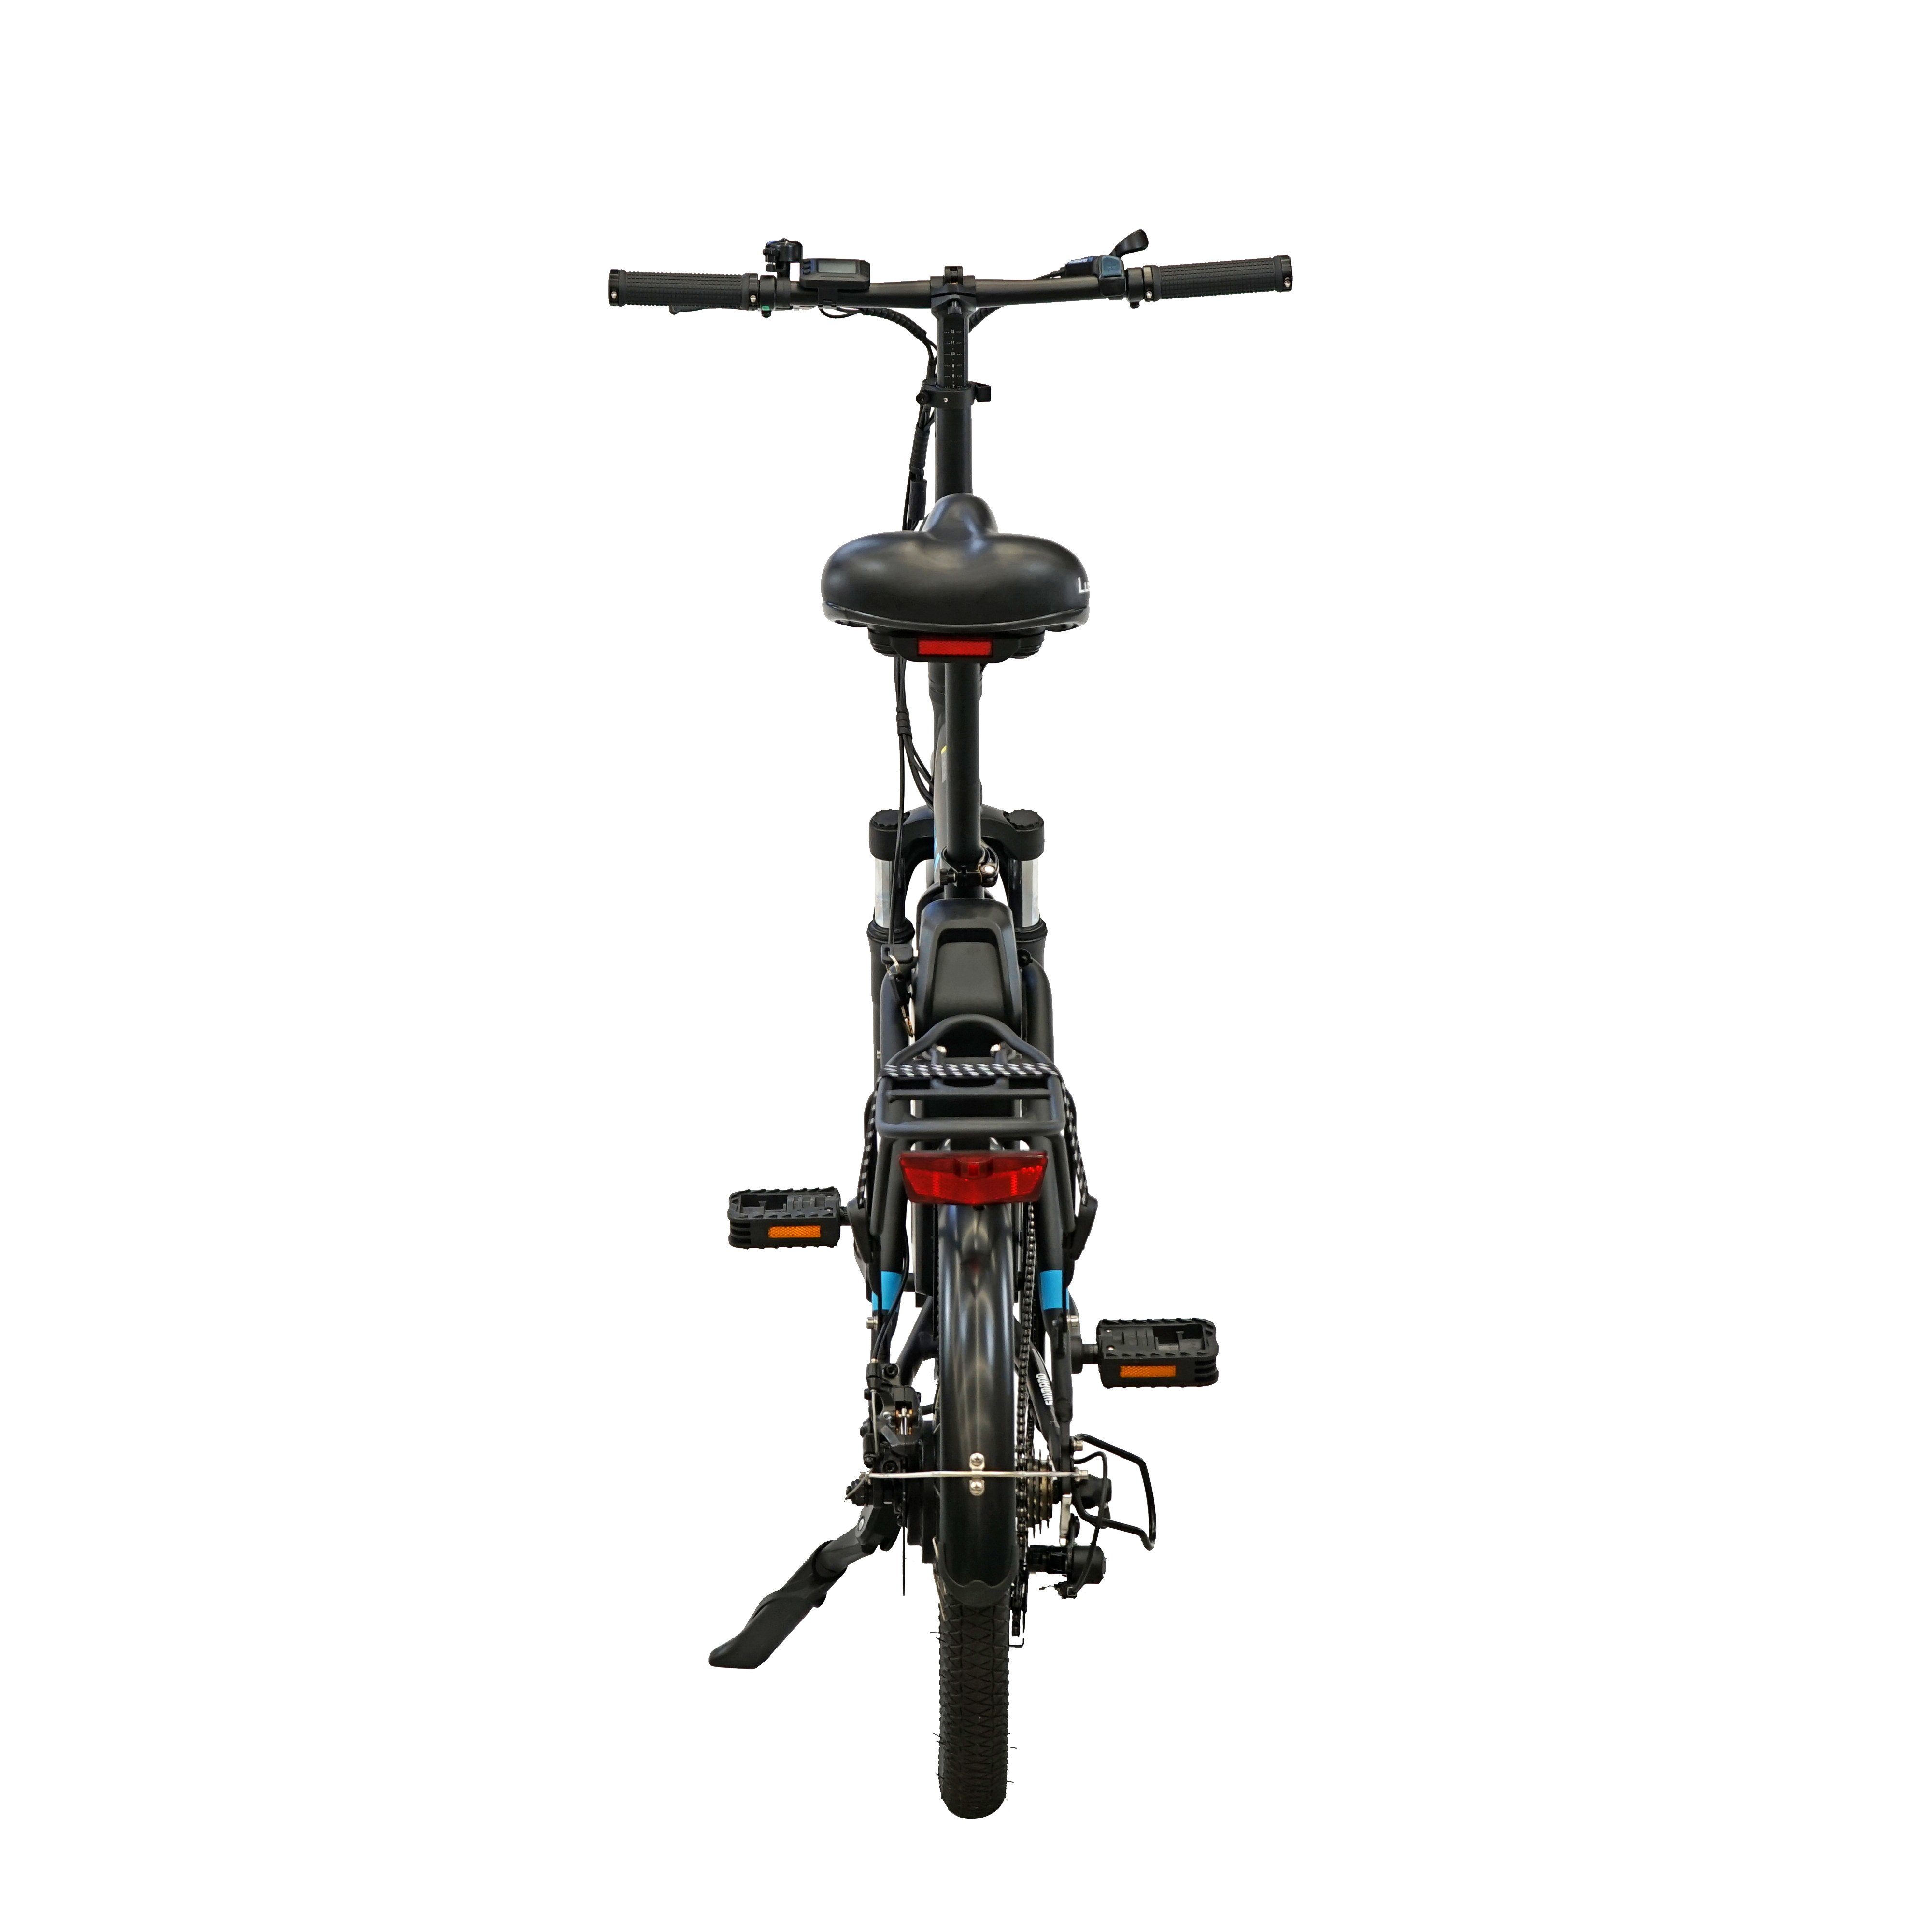 Fangqi E-Bike E-BIKE,Zusammenklappbares Elektrofahrrad,SHIMANO,250W/36V/10Ah,25km/h, Heckmotor, Gepäckträger, weiß 360 Mountainbike,Citybike,Smart (kraftunterstützt/Pedal),25km/h, 3 Reichweite,120kg, Gehunterstützungsmodus, und 55–65 Max.25km/h,IP54, Fahrmodi PAS mit Bike,Höchstgeschwindigkeit Wh 25km/h), 6km/h Nabendynamo, km Electric LCD-Display, (2 Fahrradständer